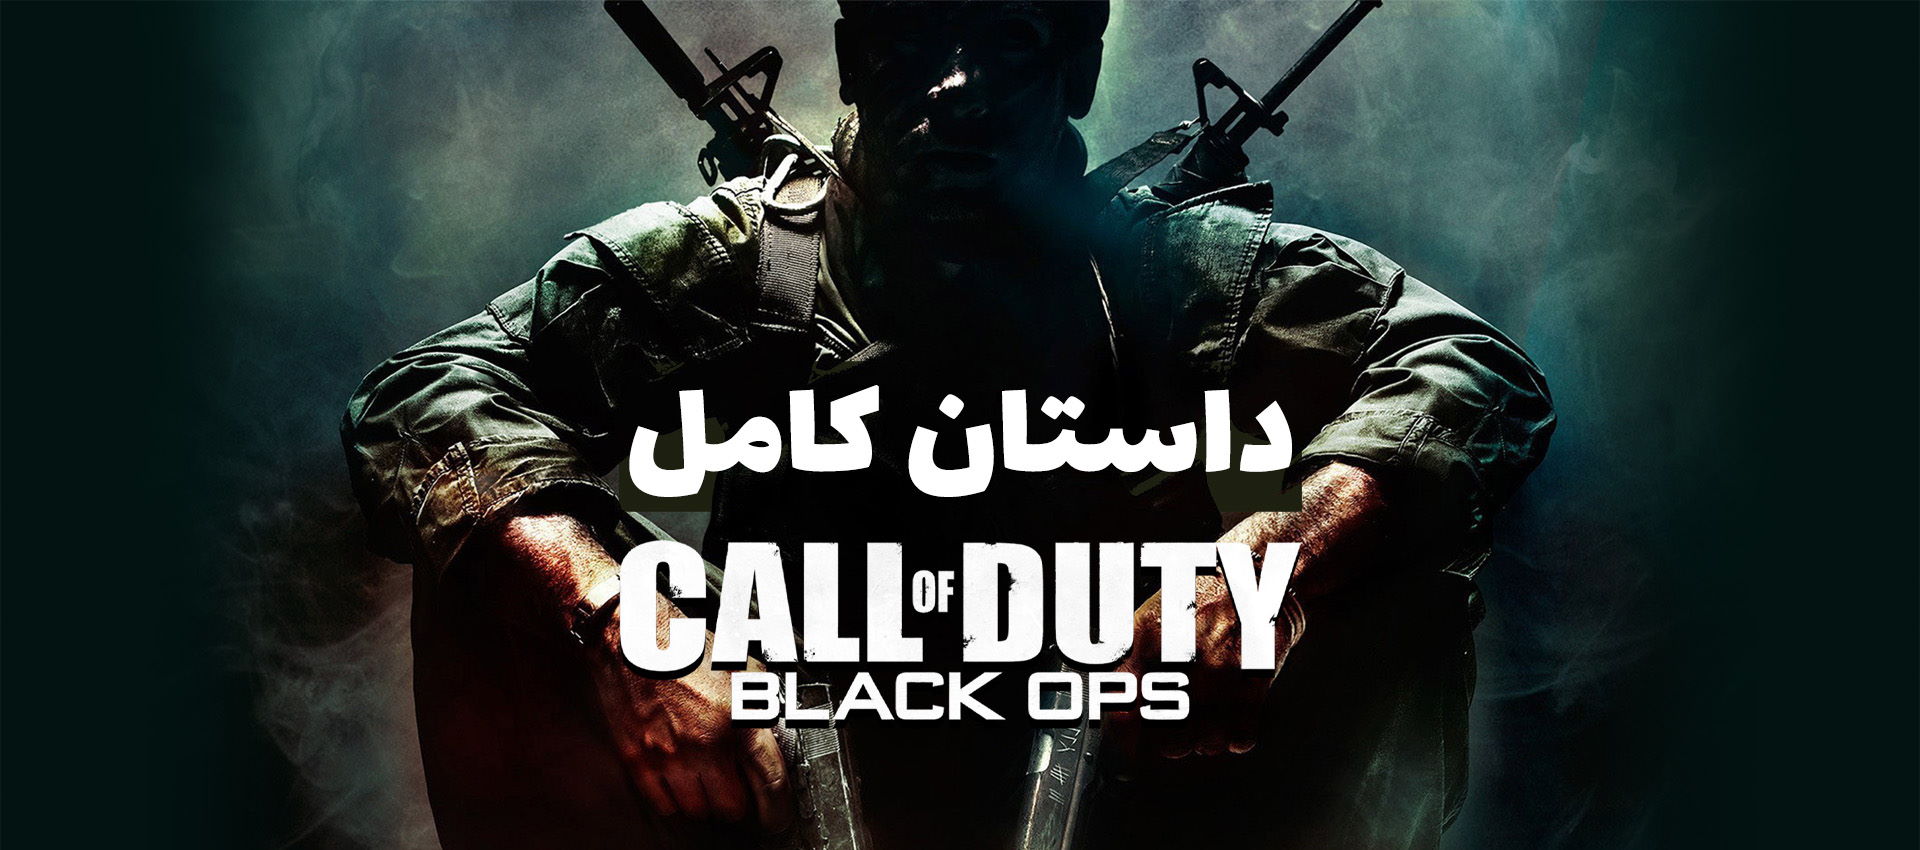 داستان کامل Call of Duty Black Ops